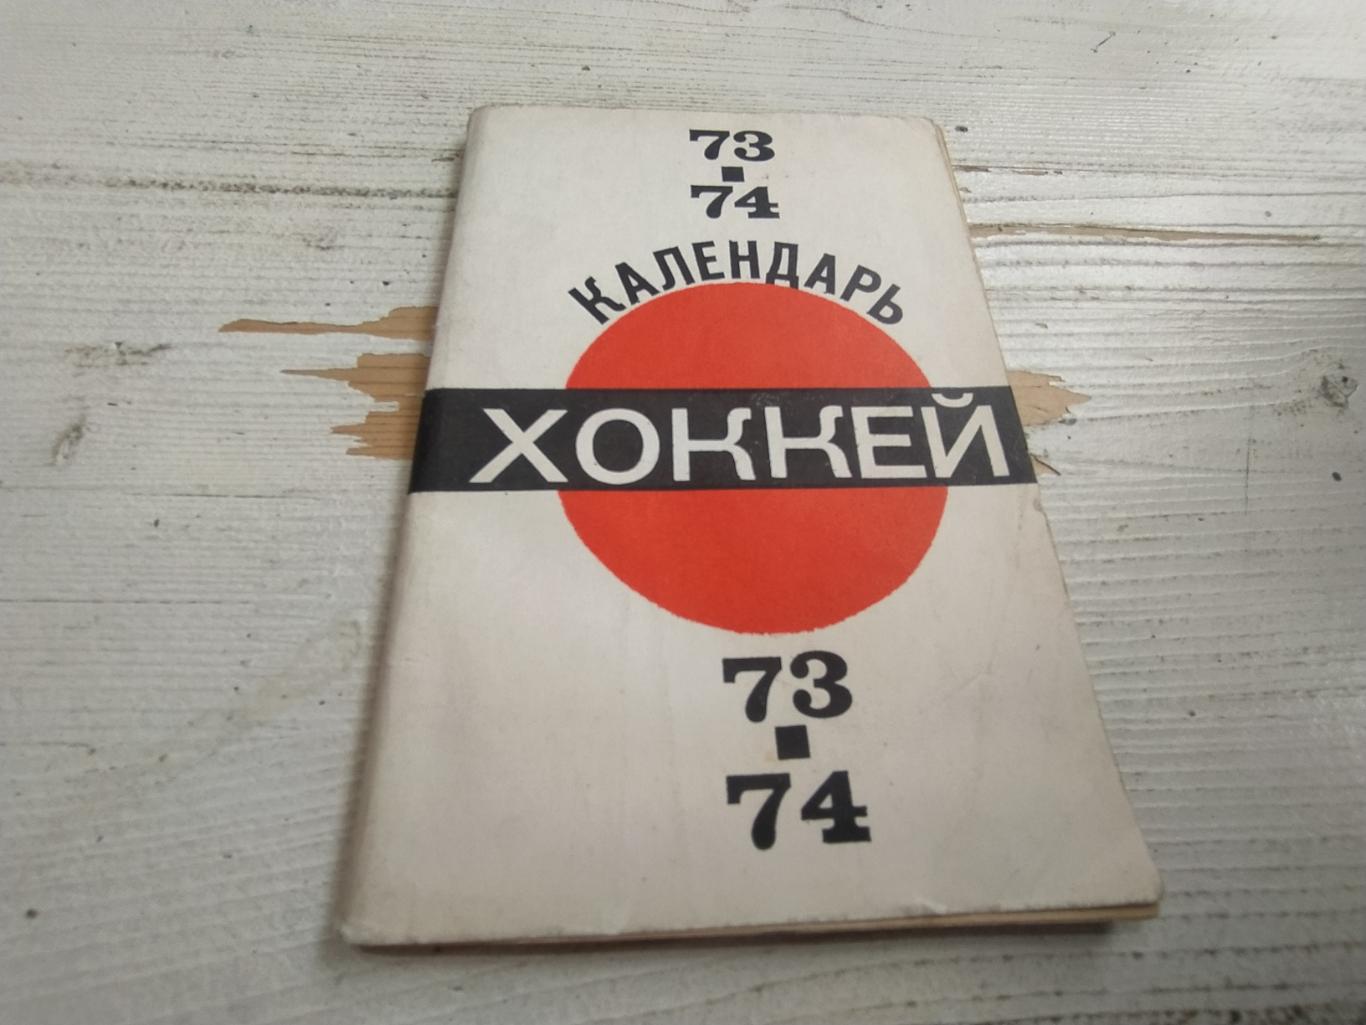 Хоккейный календарь 73-74. Первенство Советского Союза. Пахомов В., Шевцов В. 19